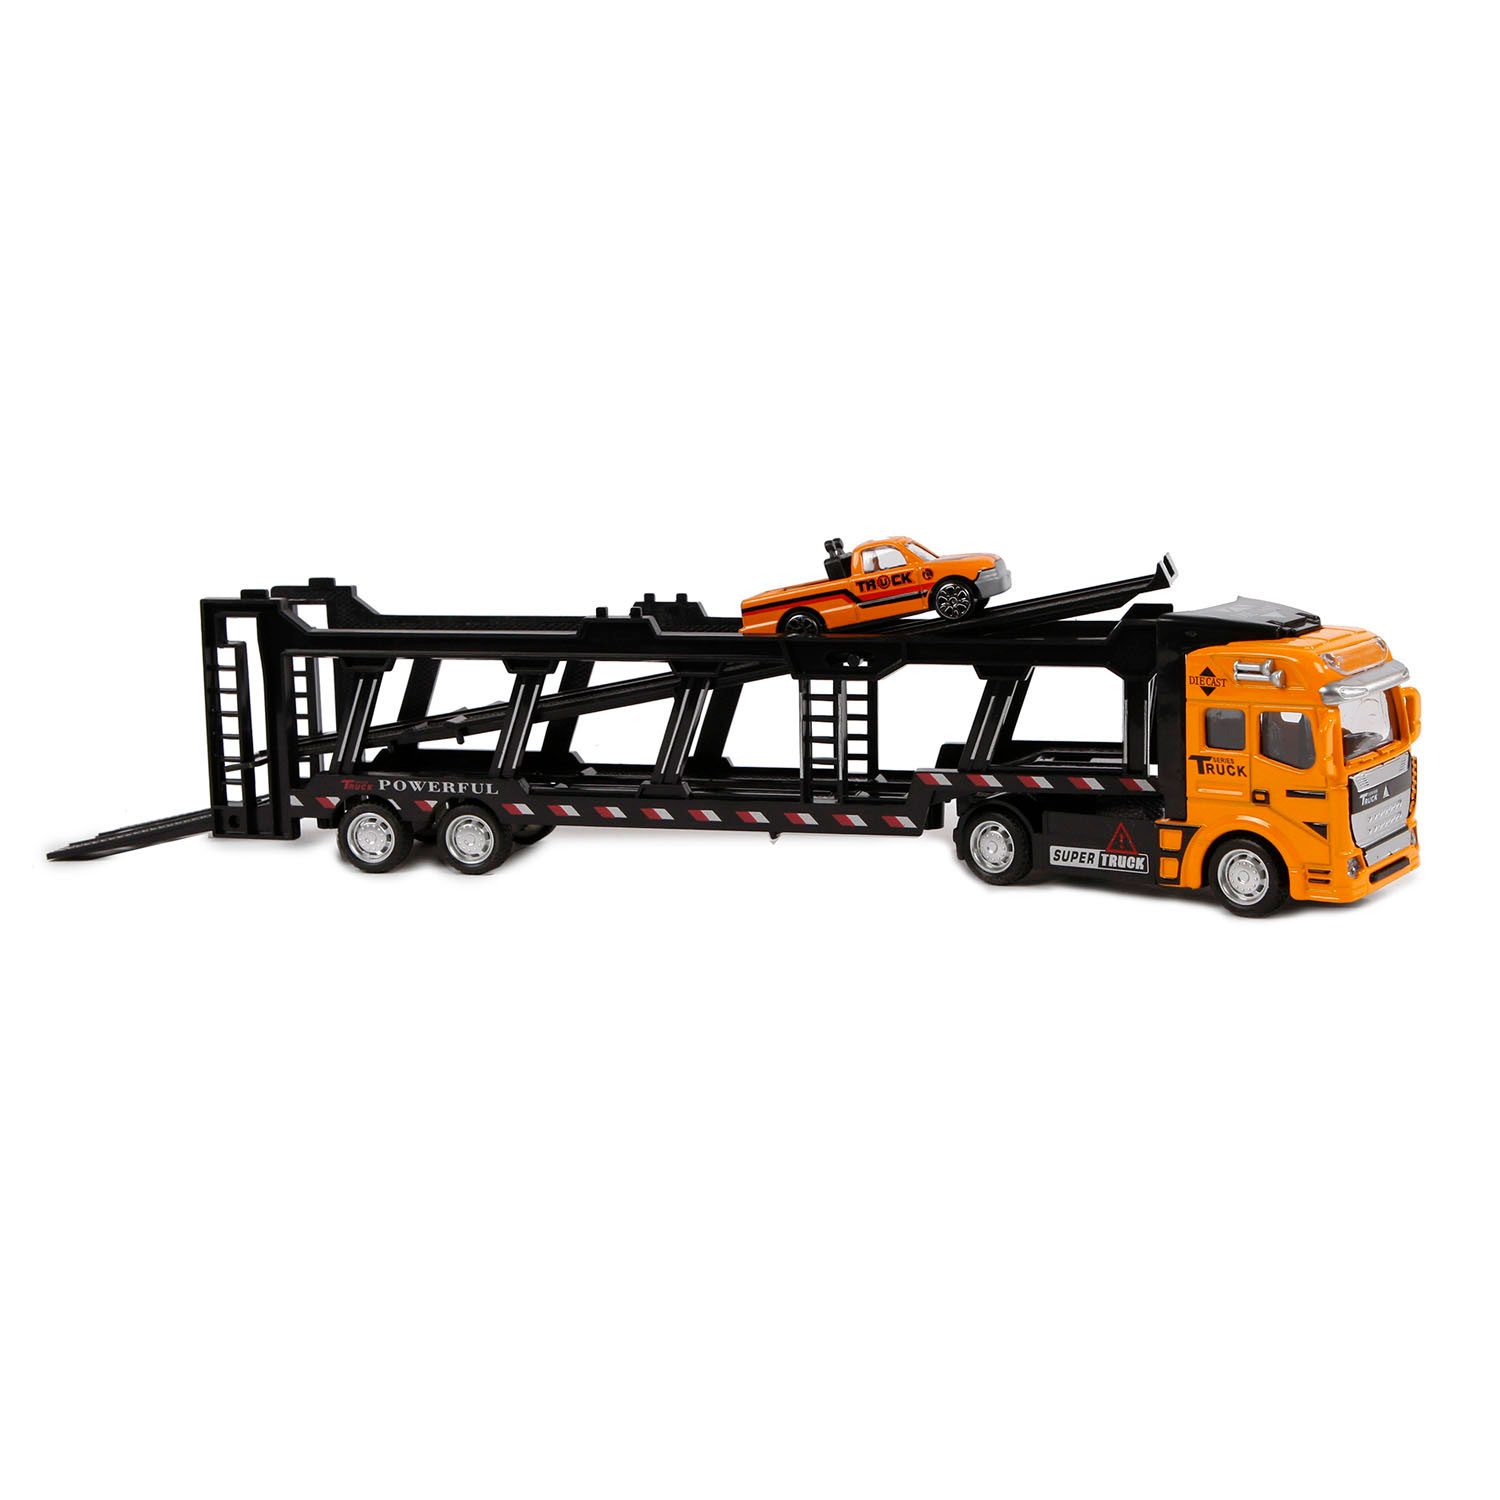 2-Play Die-cast Vrachtwagen Transporter met Auto, 32cm